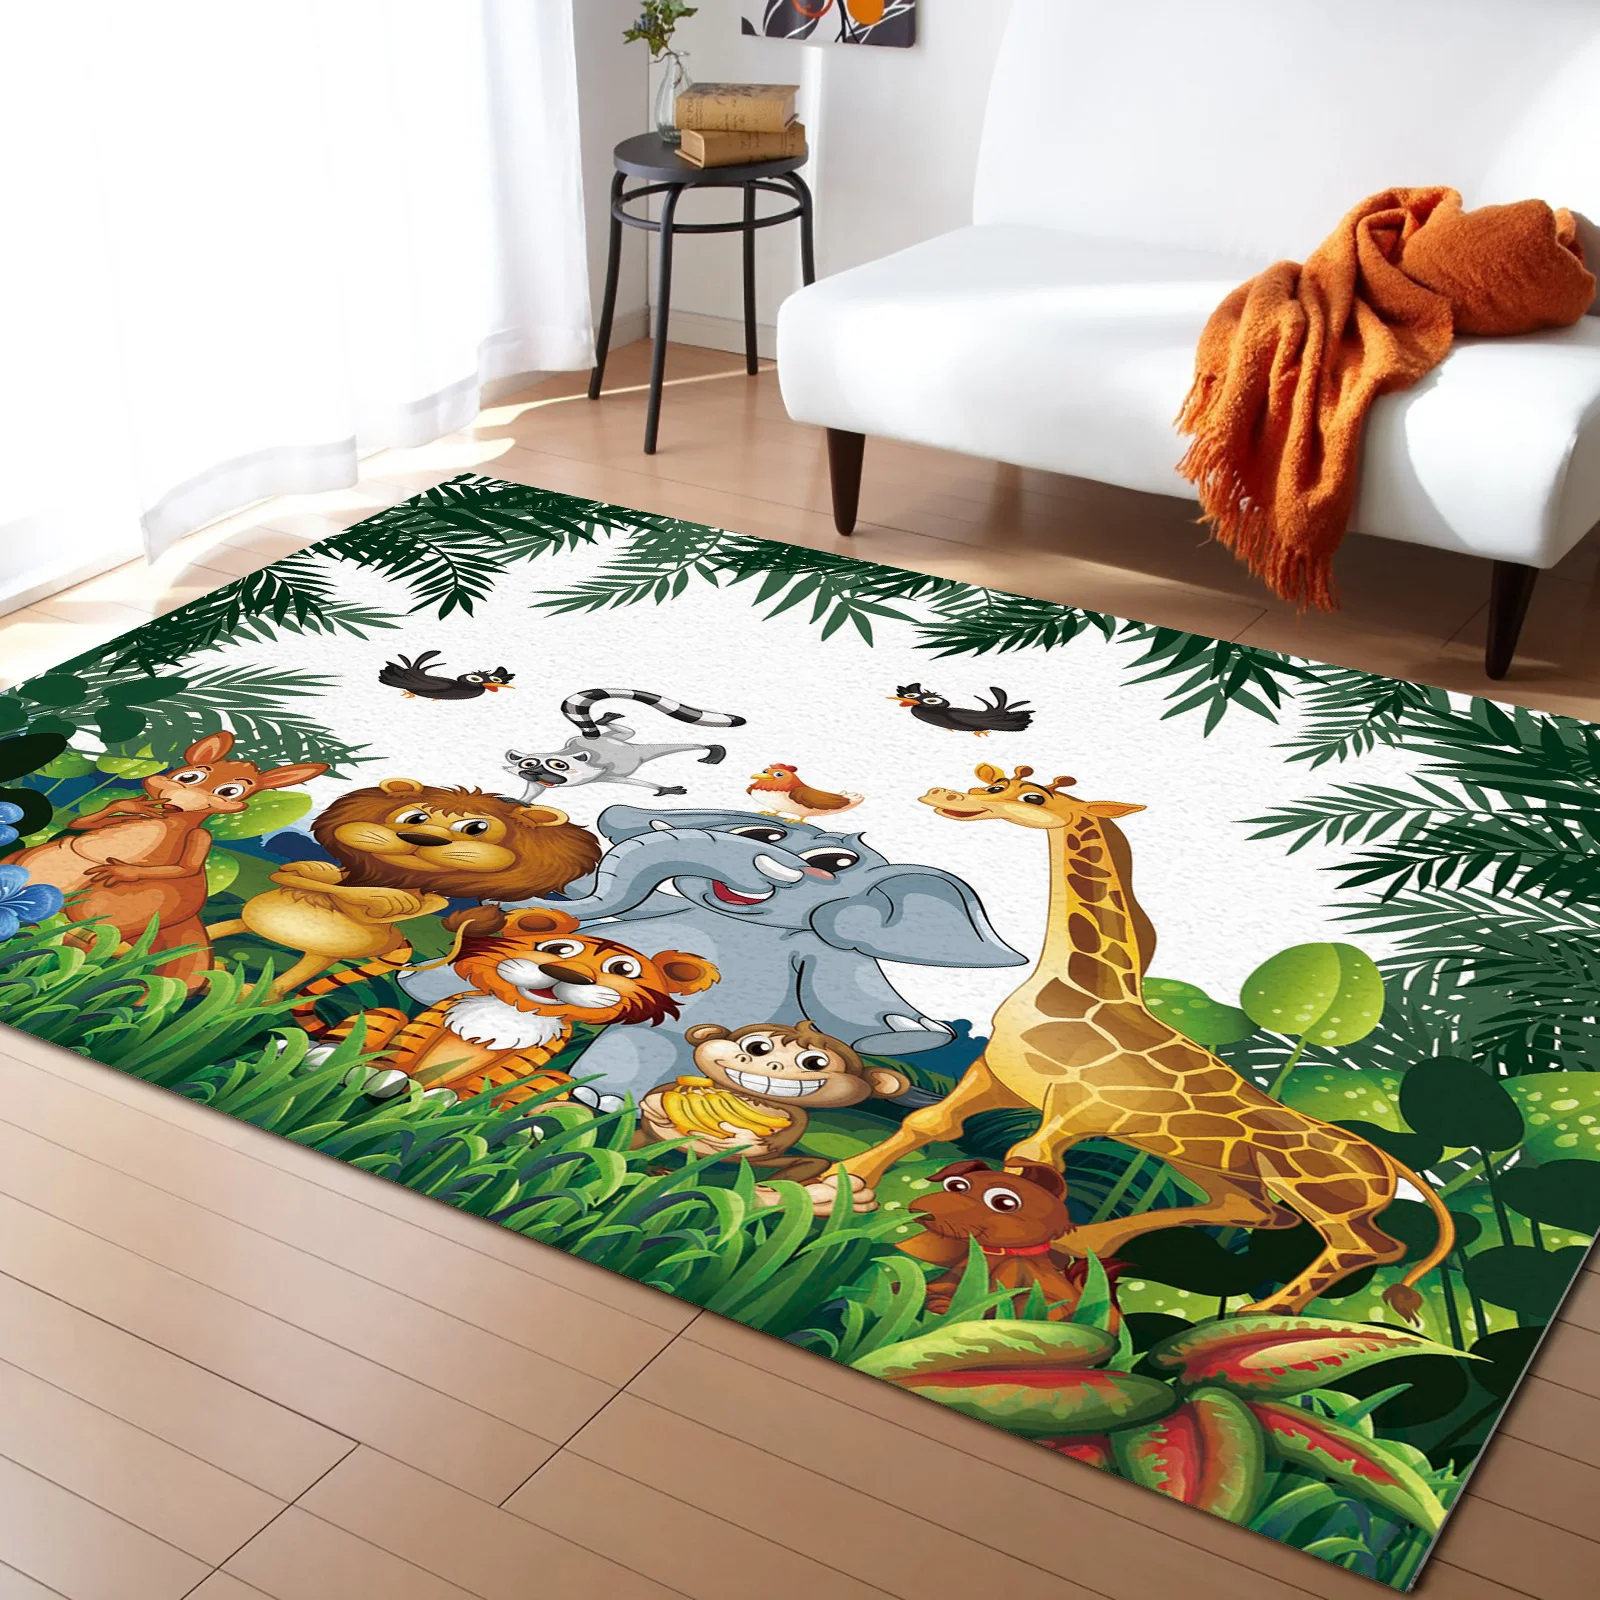 

Тропический коврик в джунглях с мультяшными животными, жирафом, львом, слоном, ковер для гостиной, напольный коврик для детской спальни, прикроватный коврик, домашний декор